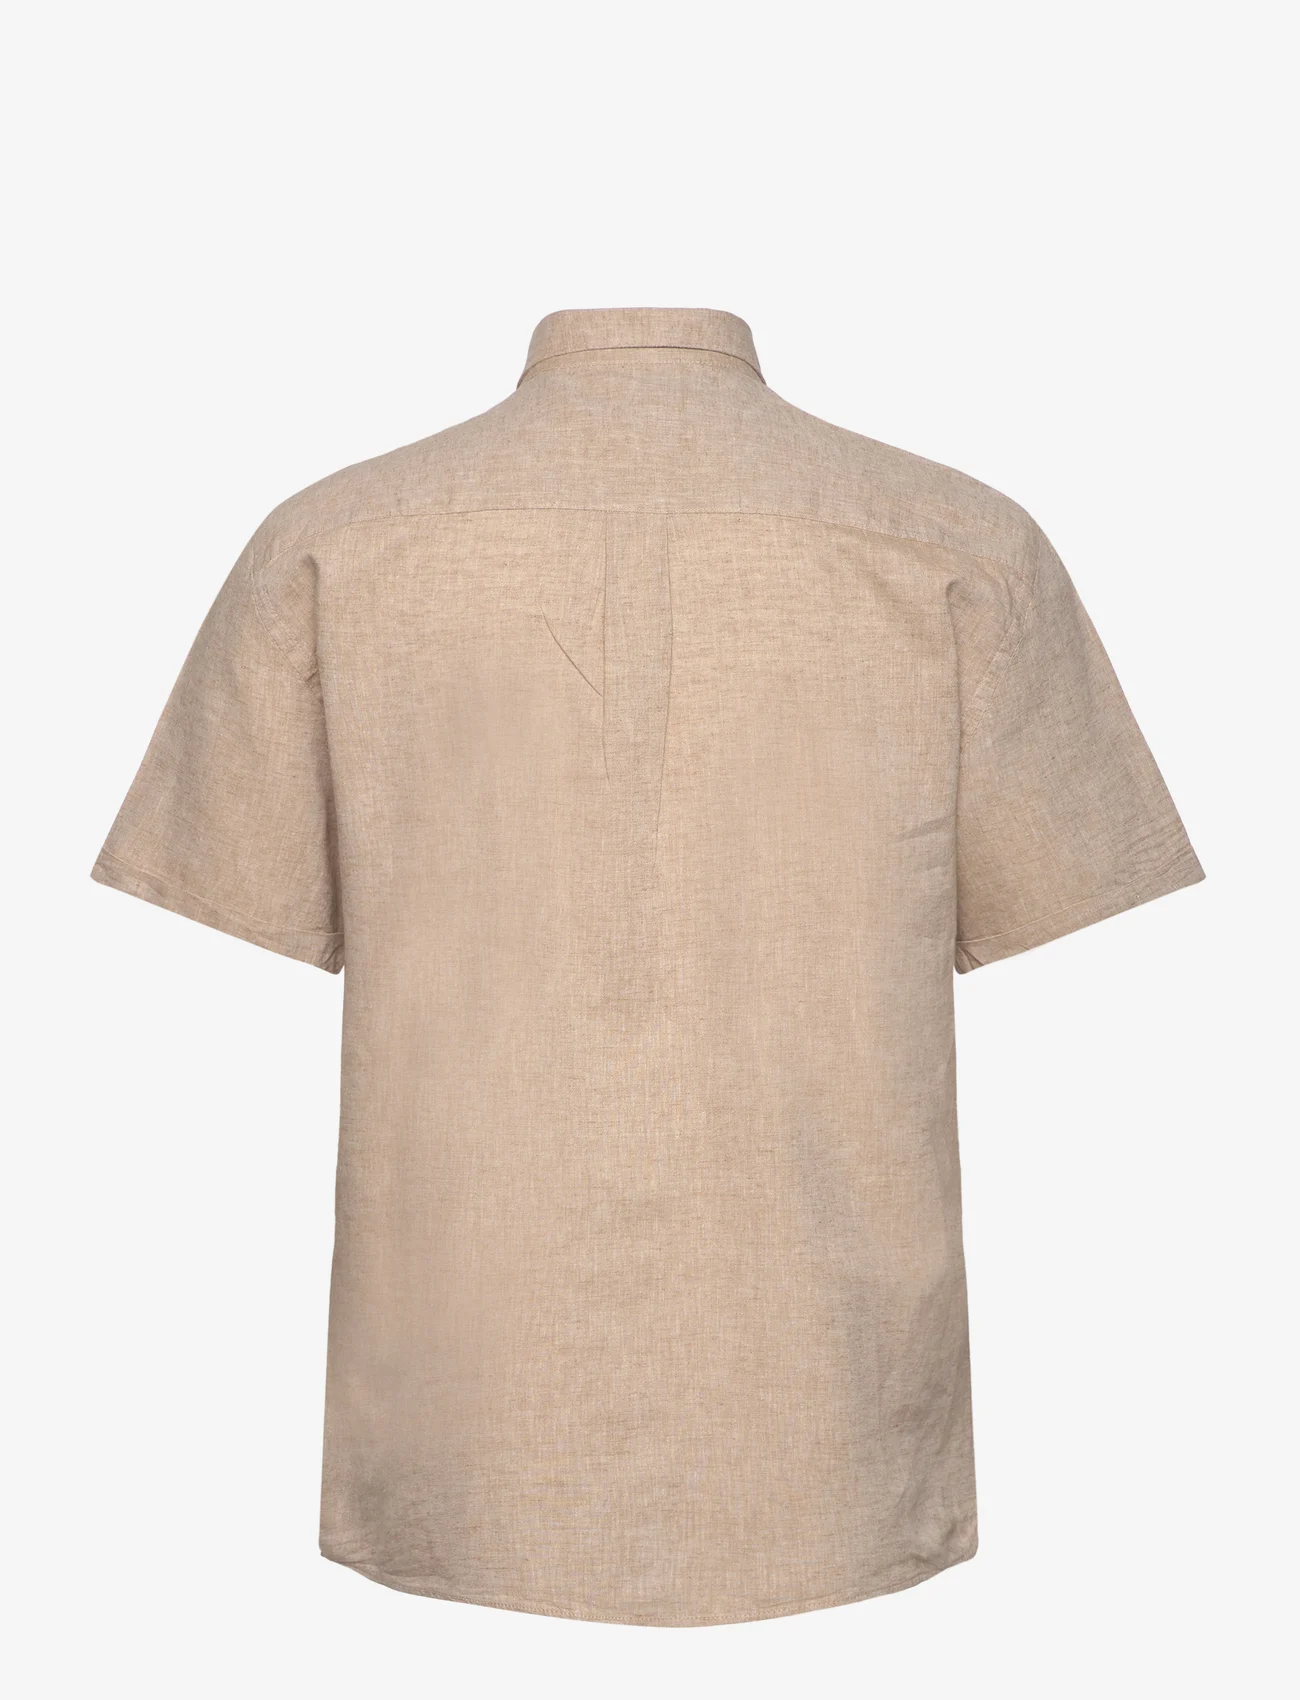 Lindbergh - Cotton/linen shirt S/S - linen shirts - mid sand - 1